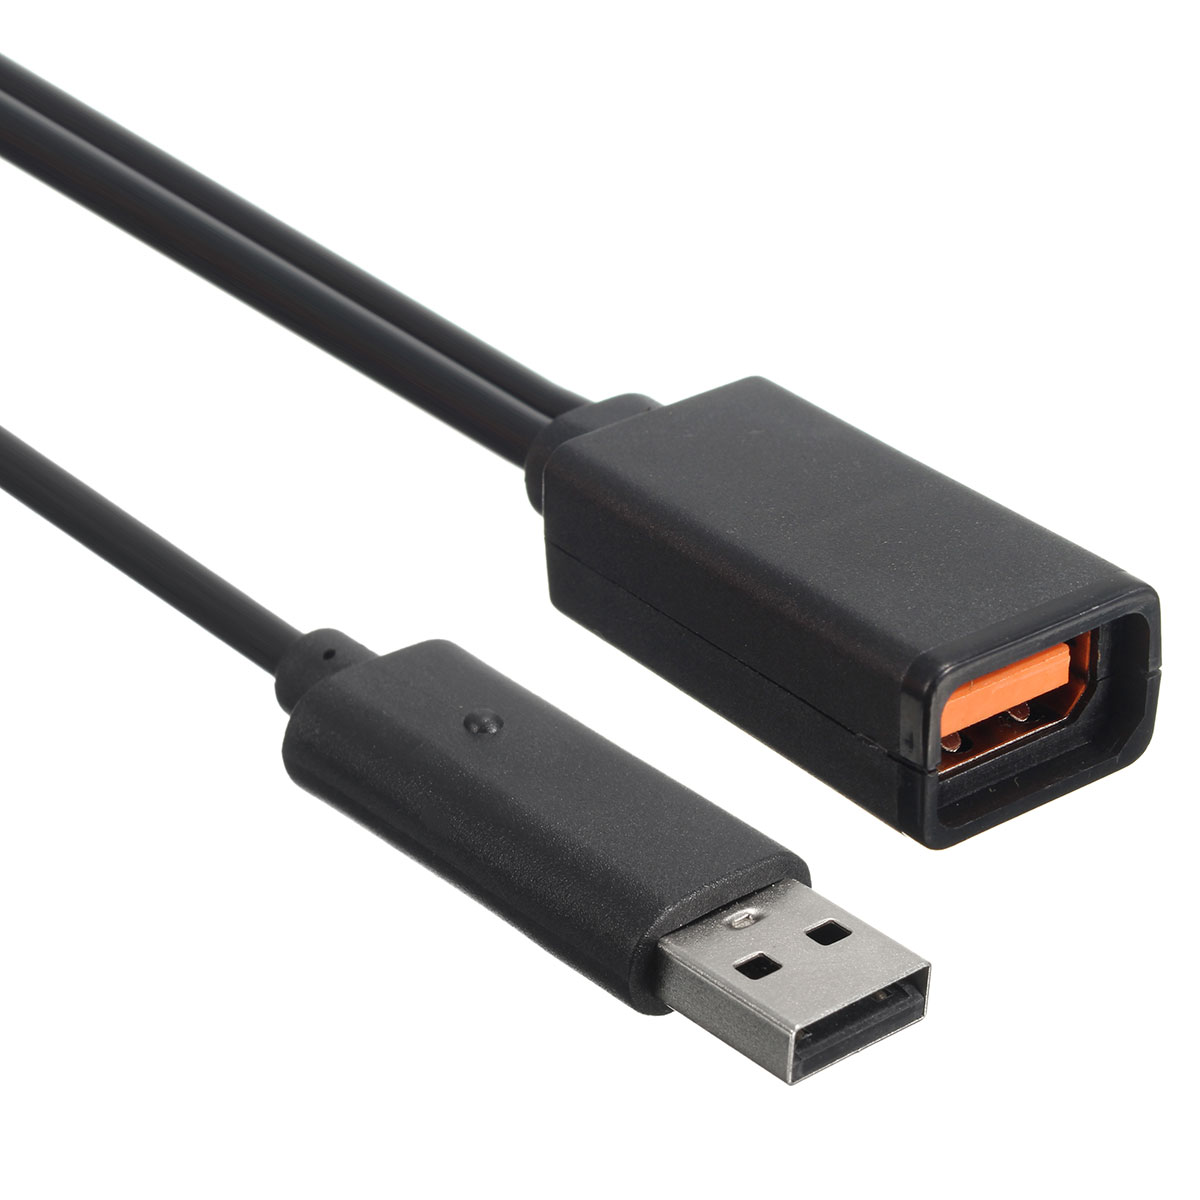 2.3m USB AC Adapter Power Supply Cable for Xbox 360 Kinect Sensor EU/US Plug 15